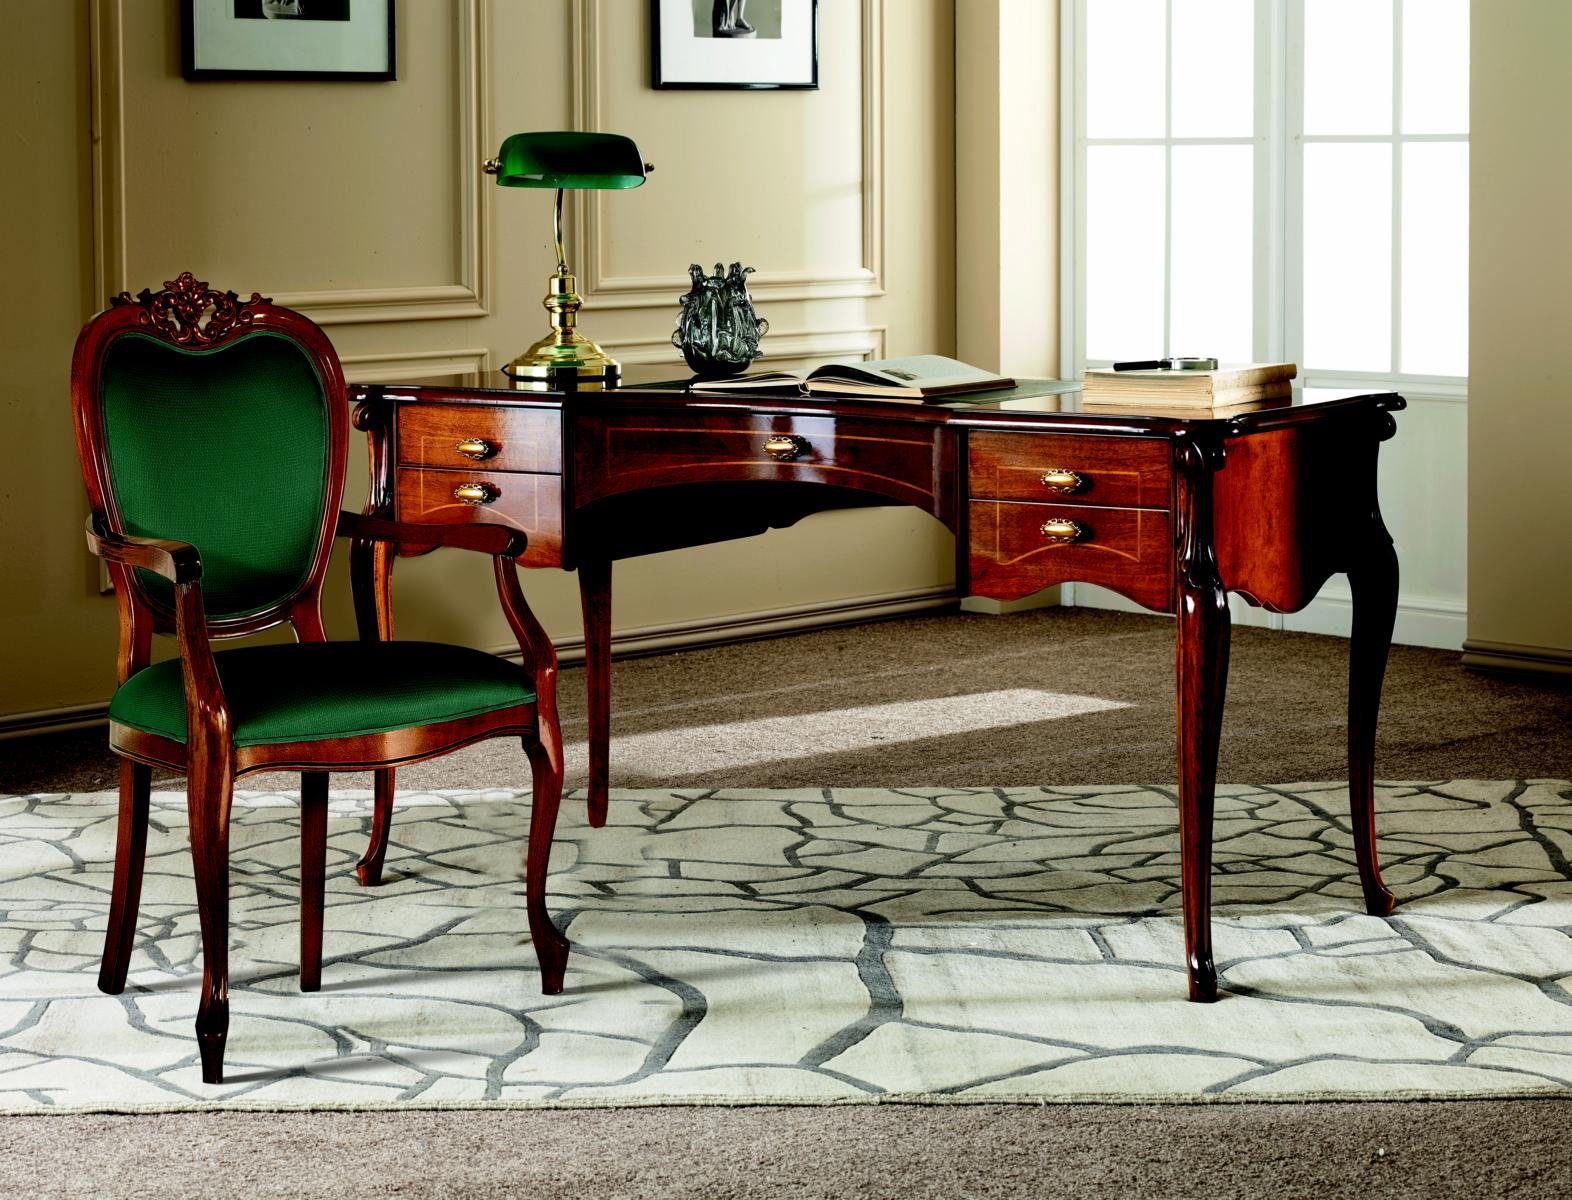 JVmoebel Schreibtisch Italienische Büromöbel Klassisches Barock Luxus Schreibtisch Stil Holz Möbel